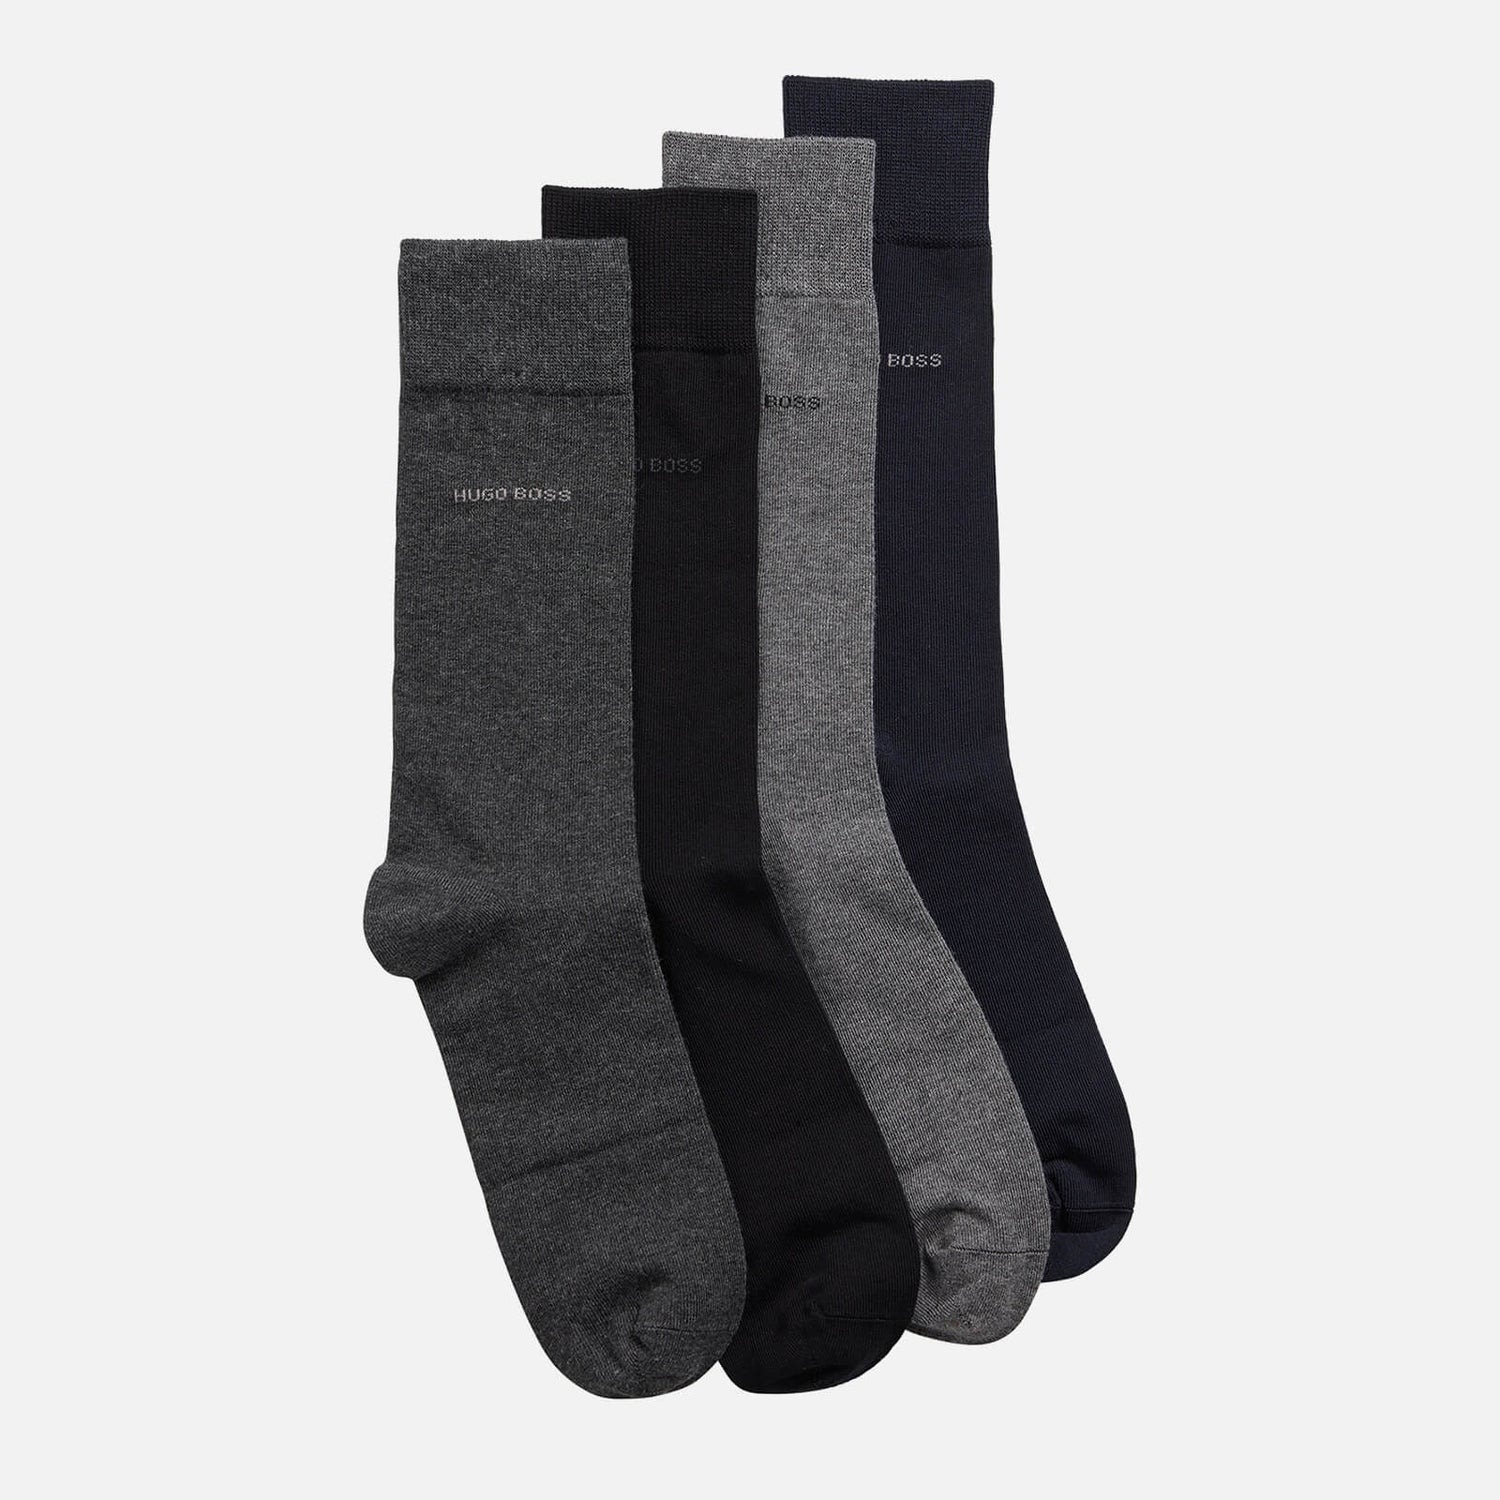 BOSS Bodywear Men's 4-Pack Gift Set Socks - Multi - 40-46